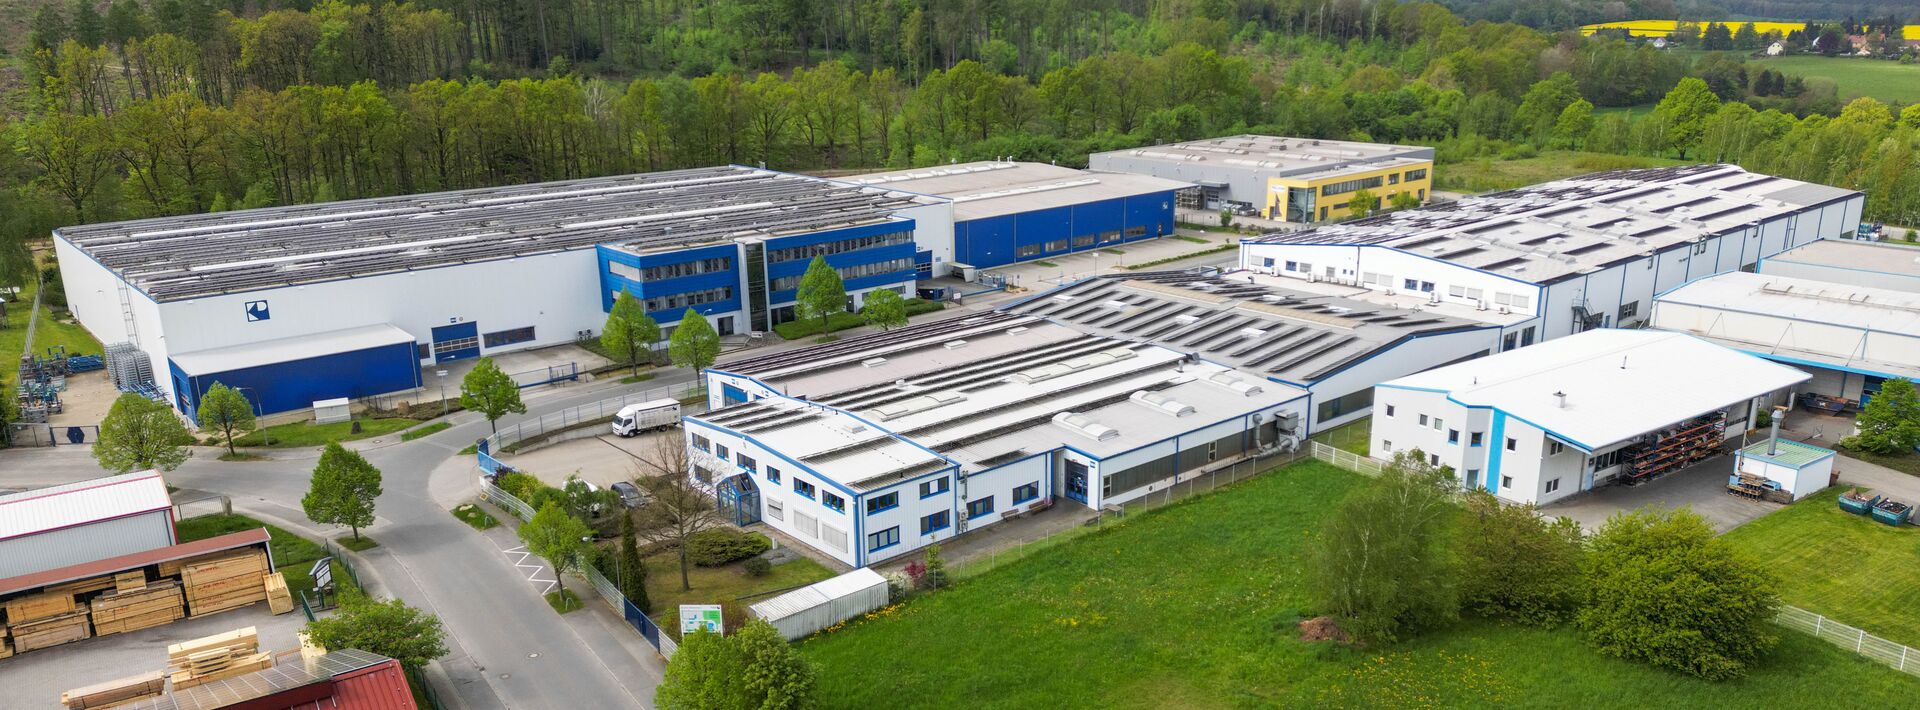 Käppler & Pausch GmbH - OEM manufacturer from Neukirch Lausitz